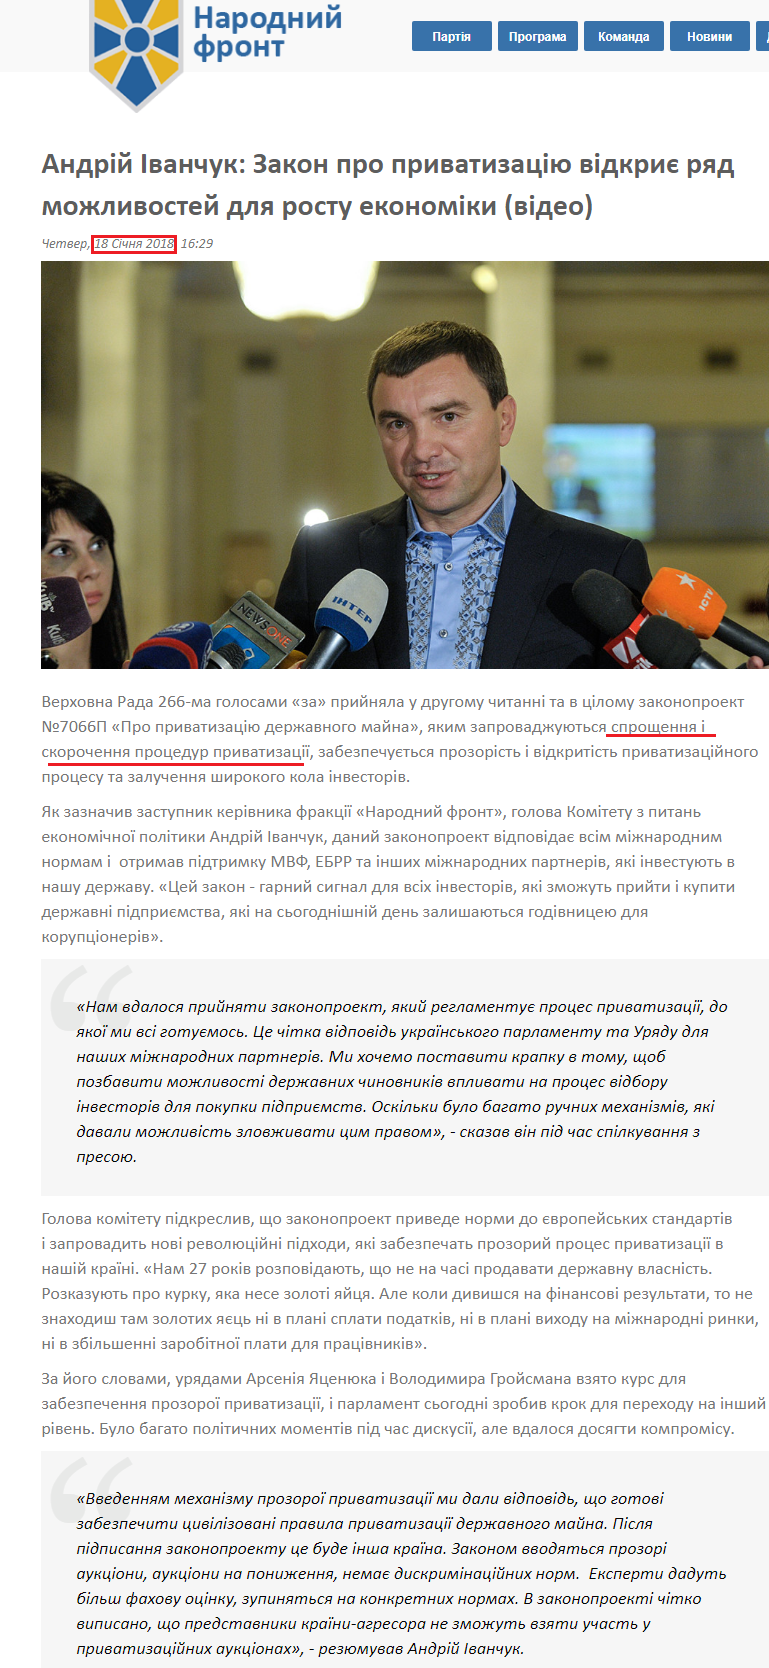 http://nfront.org.ua/news/details/andrij-ivanchuk-zakon-pro-privatizaciyu-vidkriye-ryad-mozhlivostej-dlya-rostu-ekonomiki